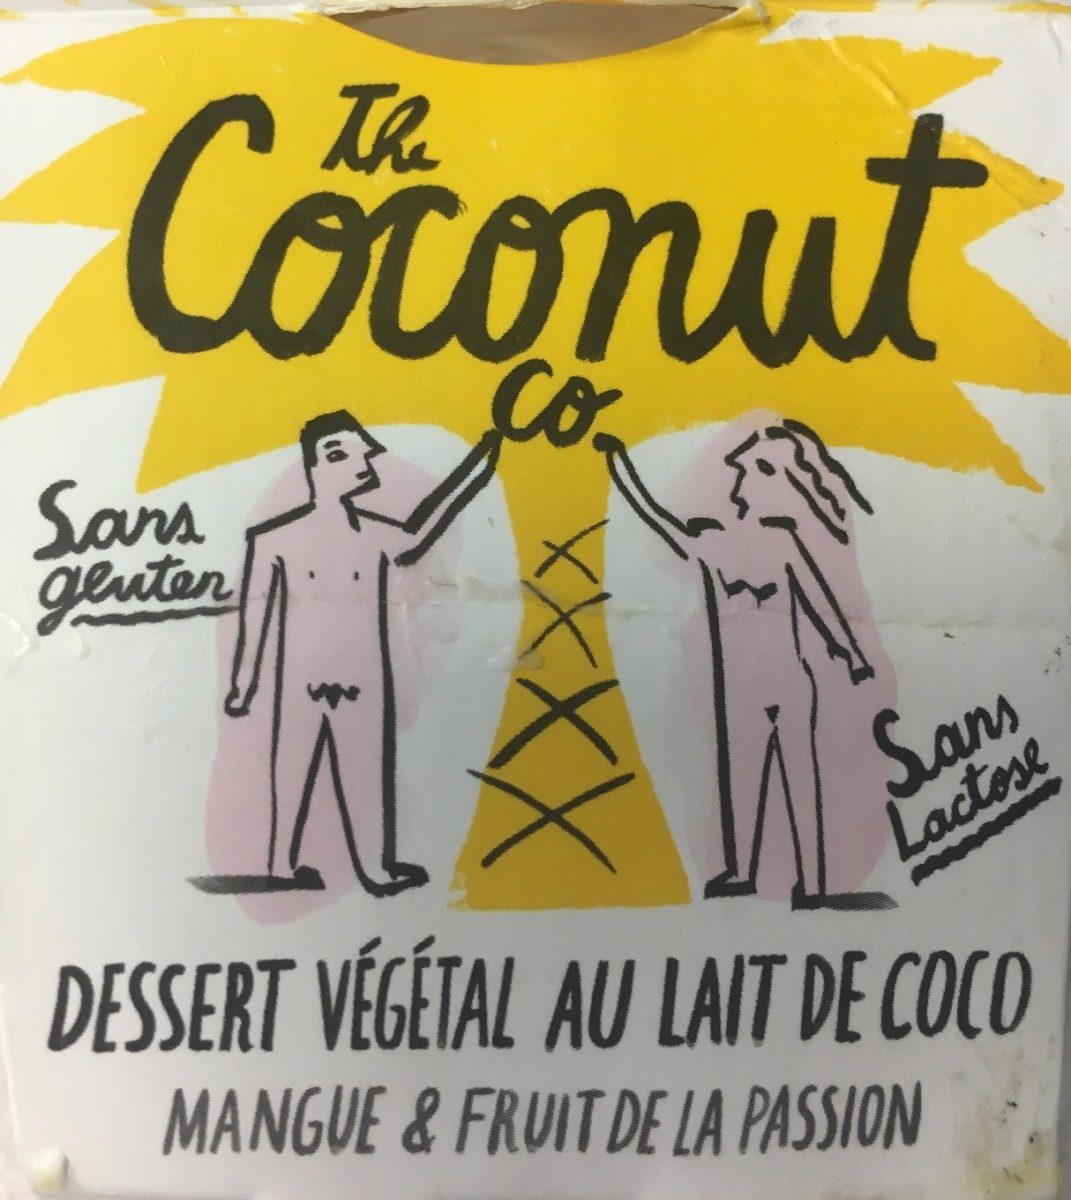 Dessert végétal au lait de coco - Producto - fr